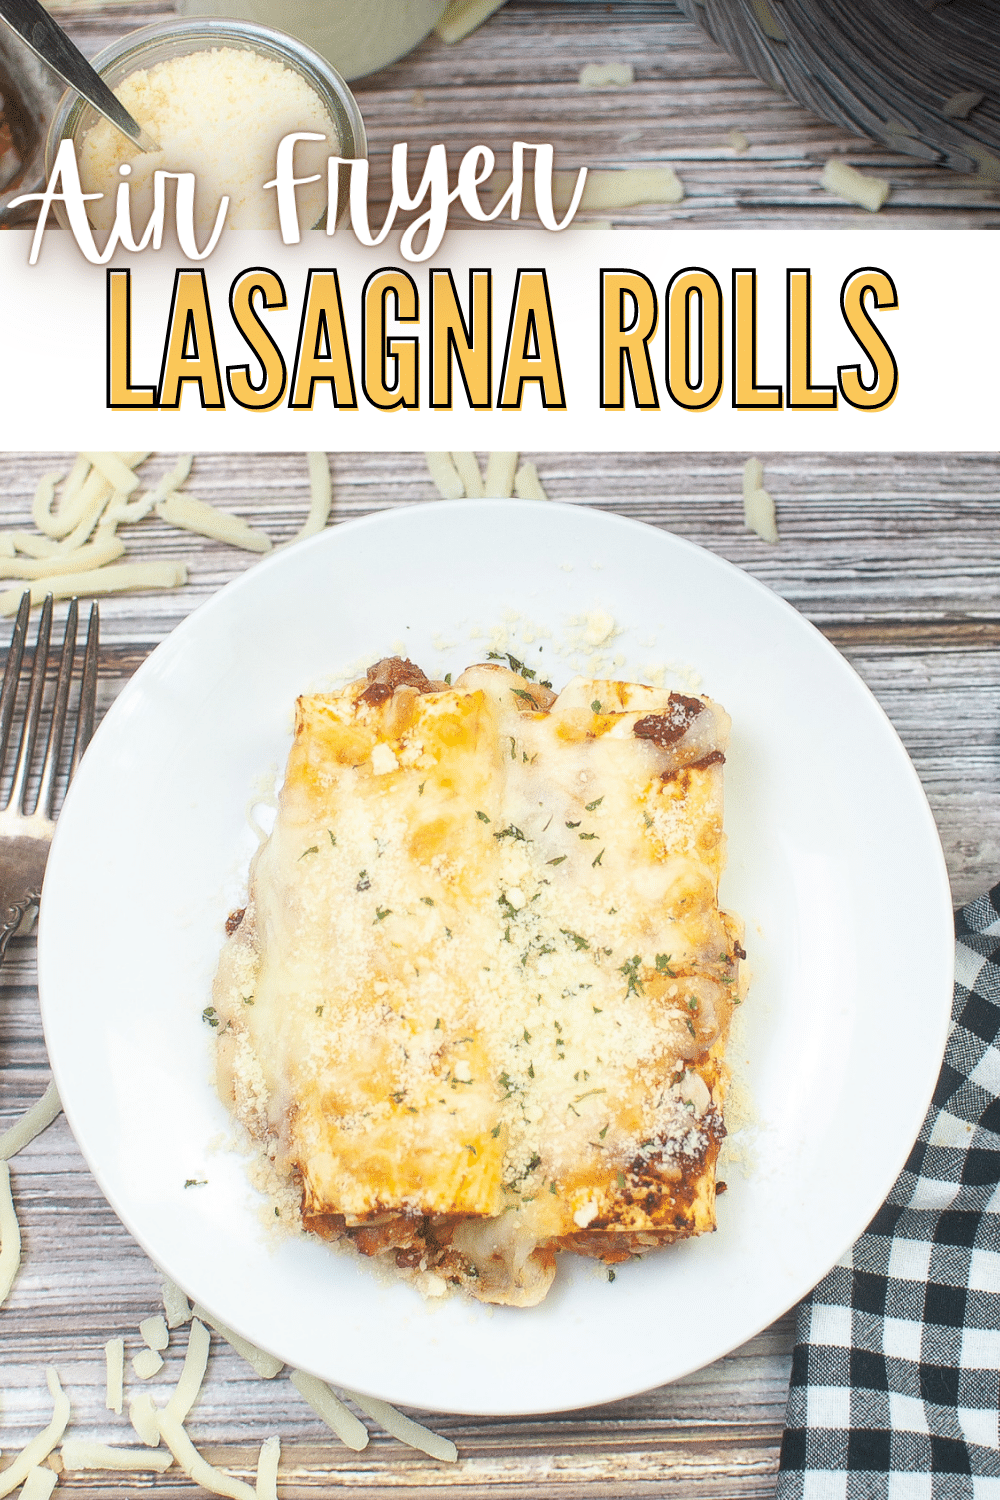 A plate of Air Fryer lasagna rolls.